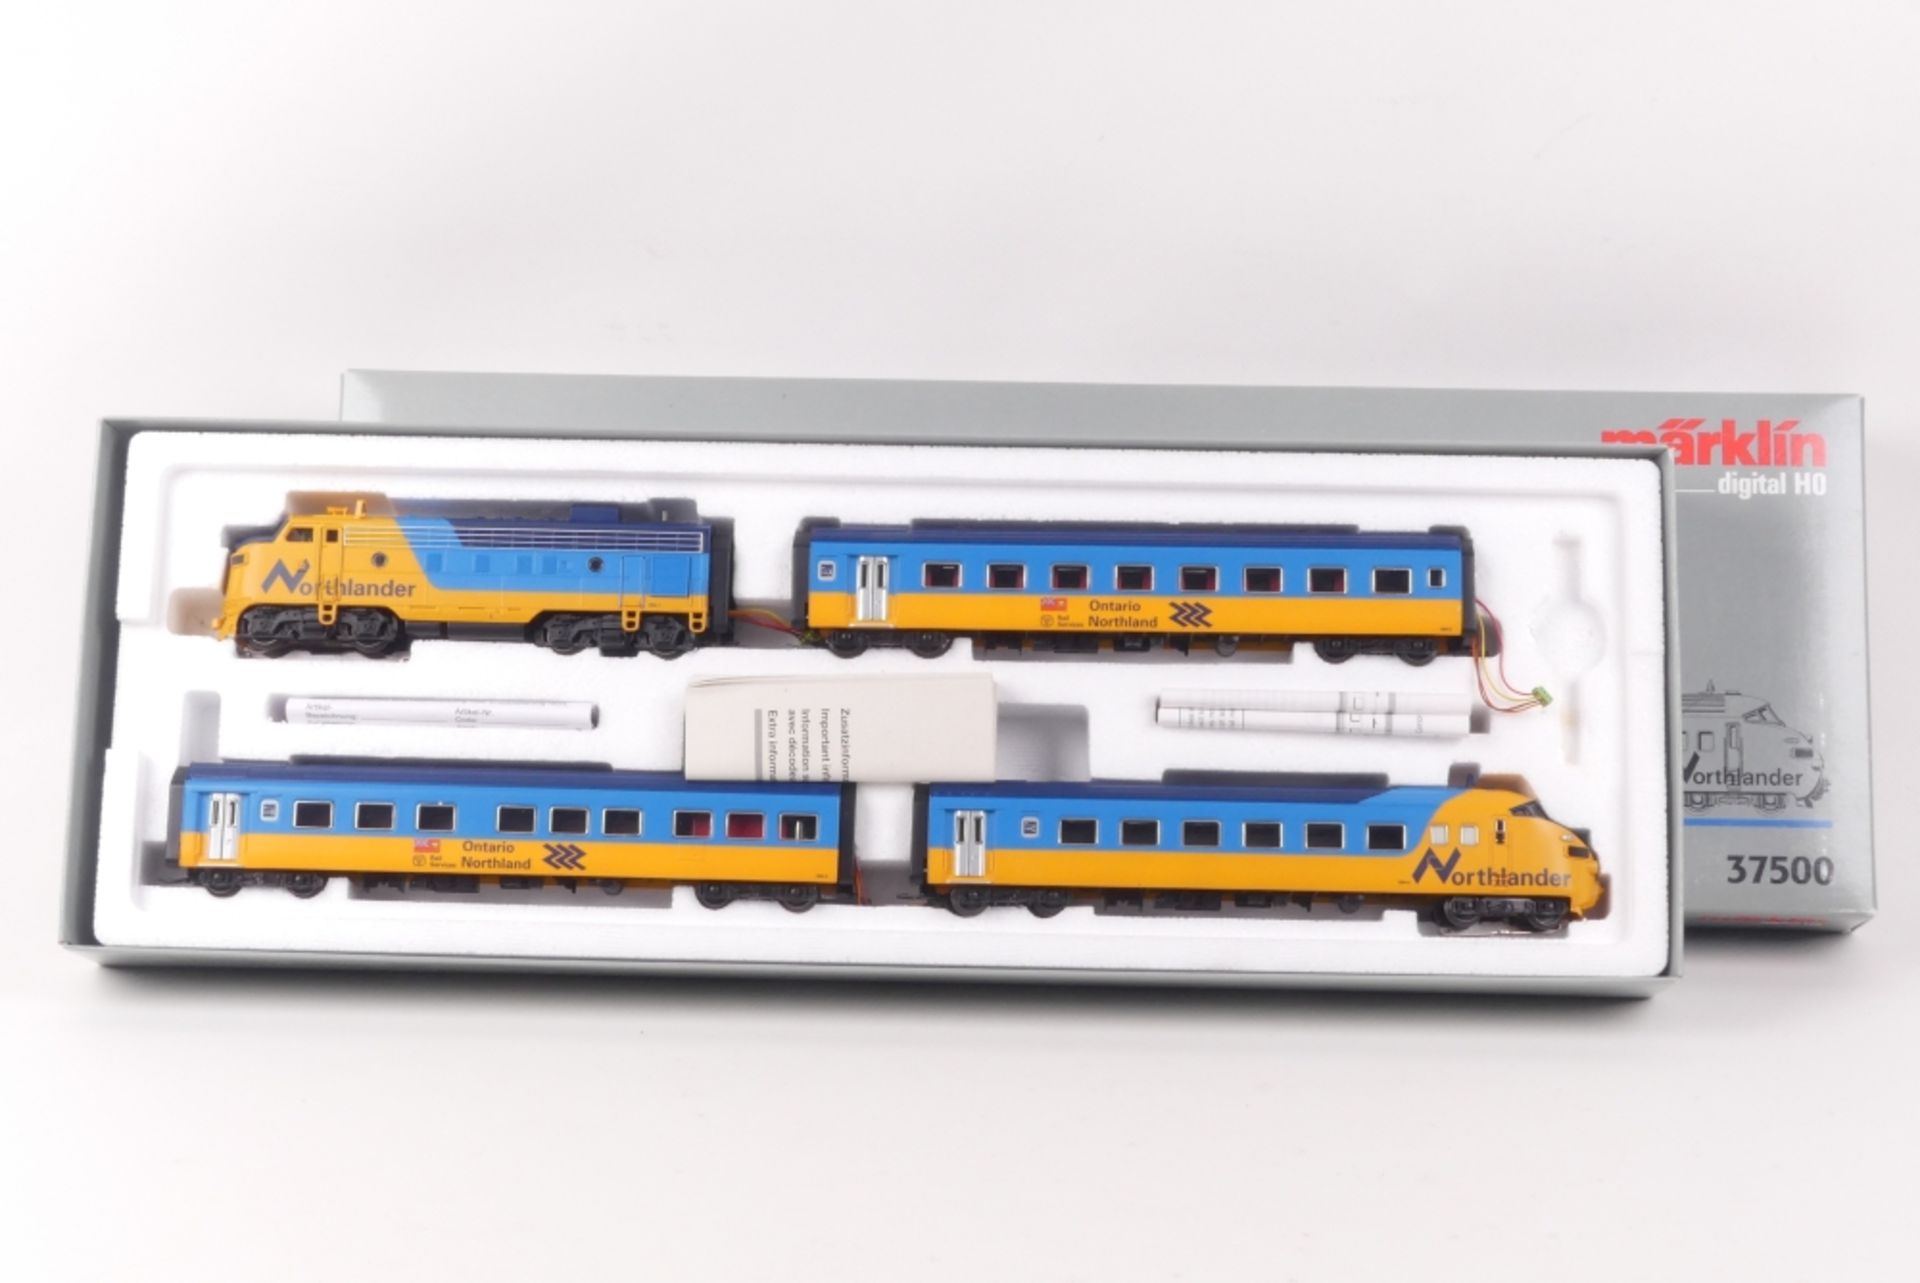 Märklin 37500Märklin 37500, "Northlander", vierteiliger Triebwagenzug, Diesellokomot